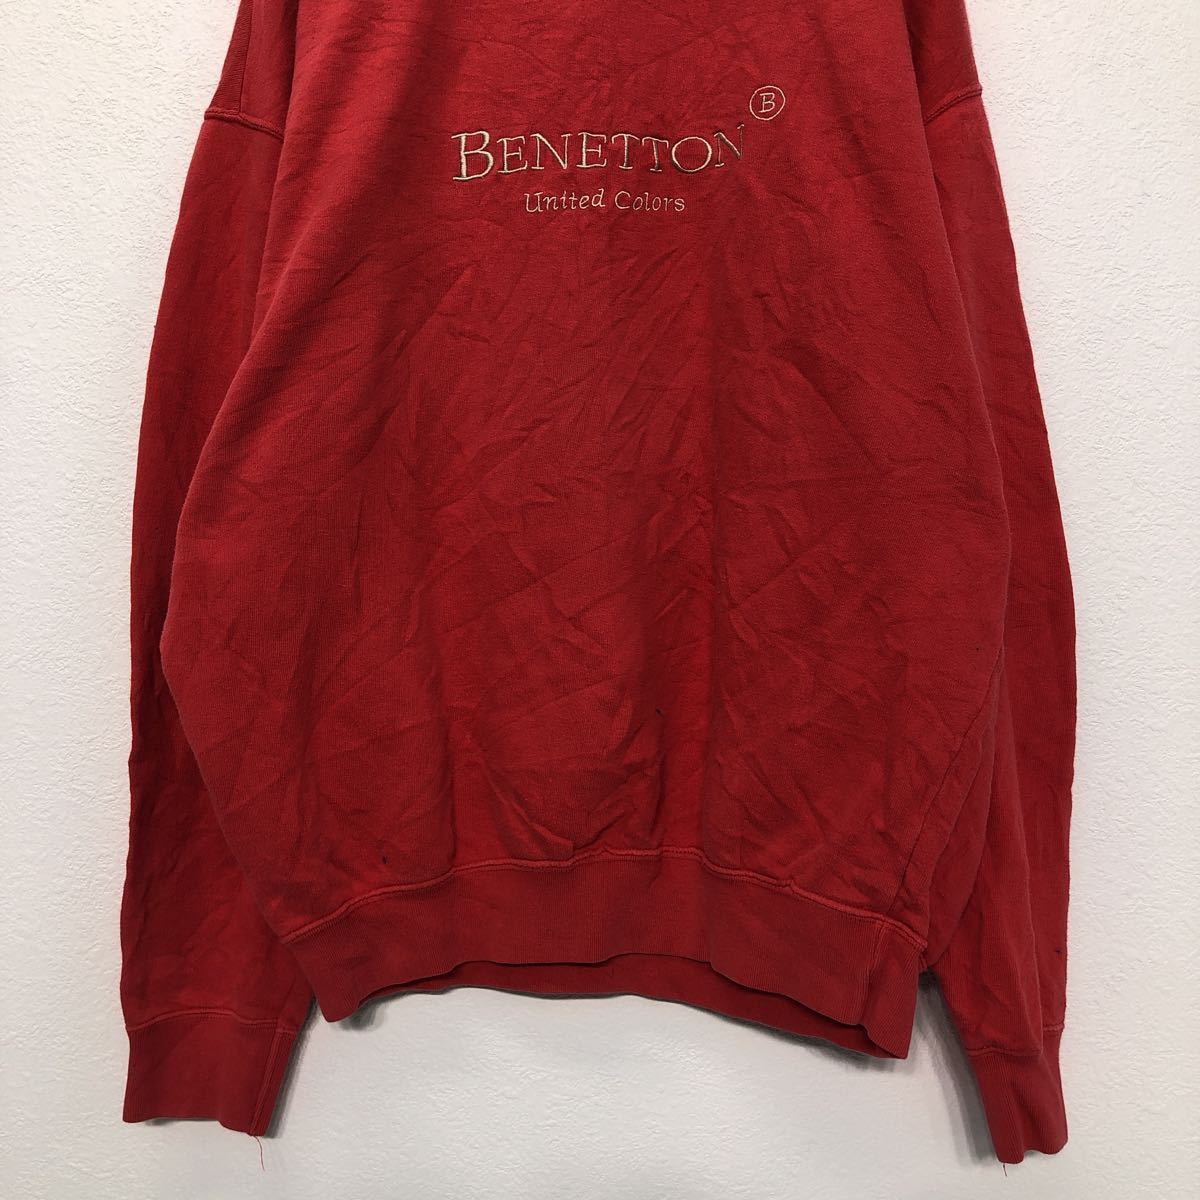 UNITED COLORS OF BENETTON Logo тренировочный M красный united цвет zob Benetton Италия производства б/у одежда . America скупка a503-6137